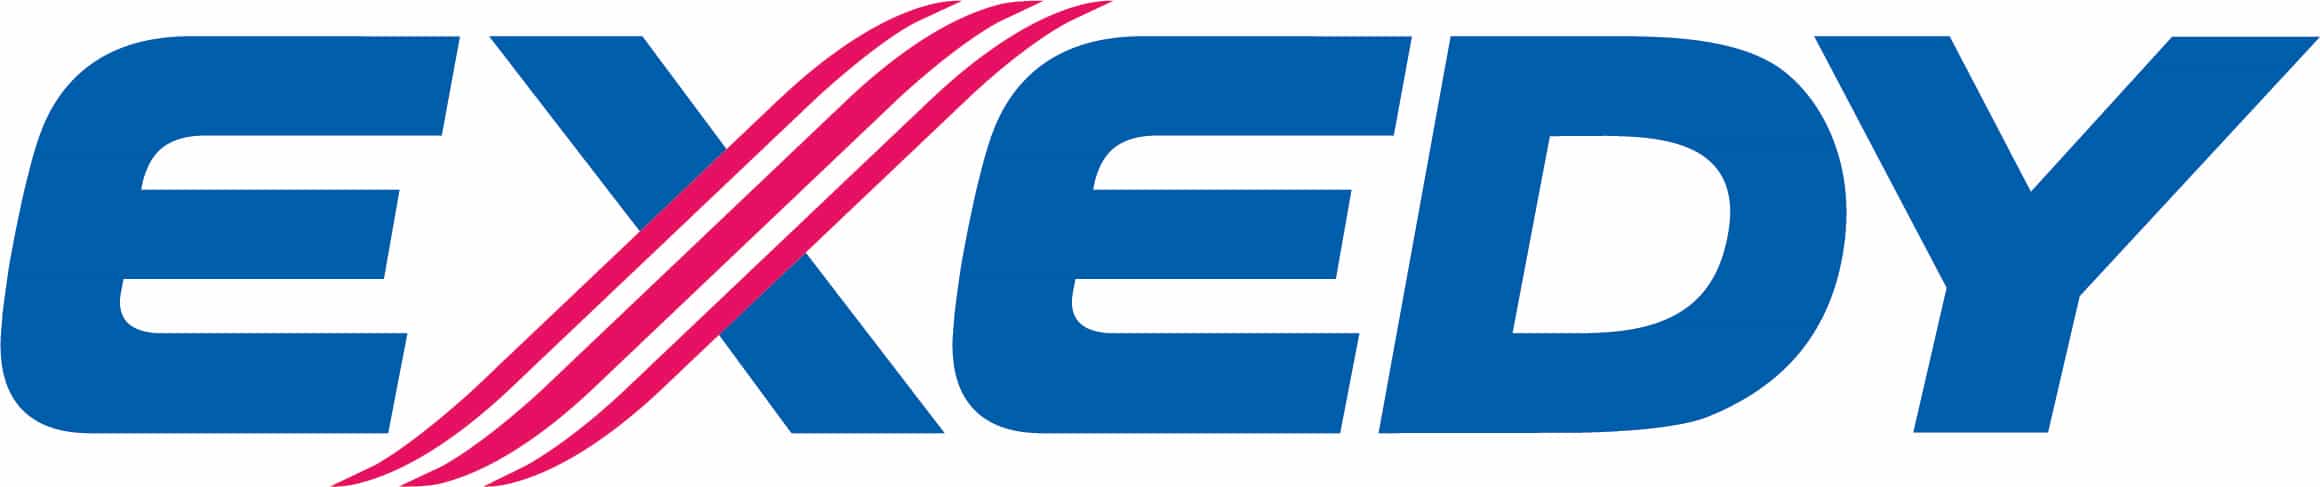 Exedy Logo all combination